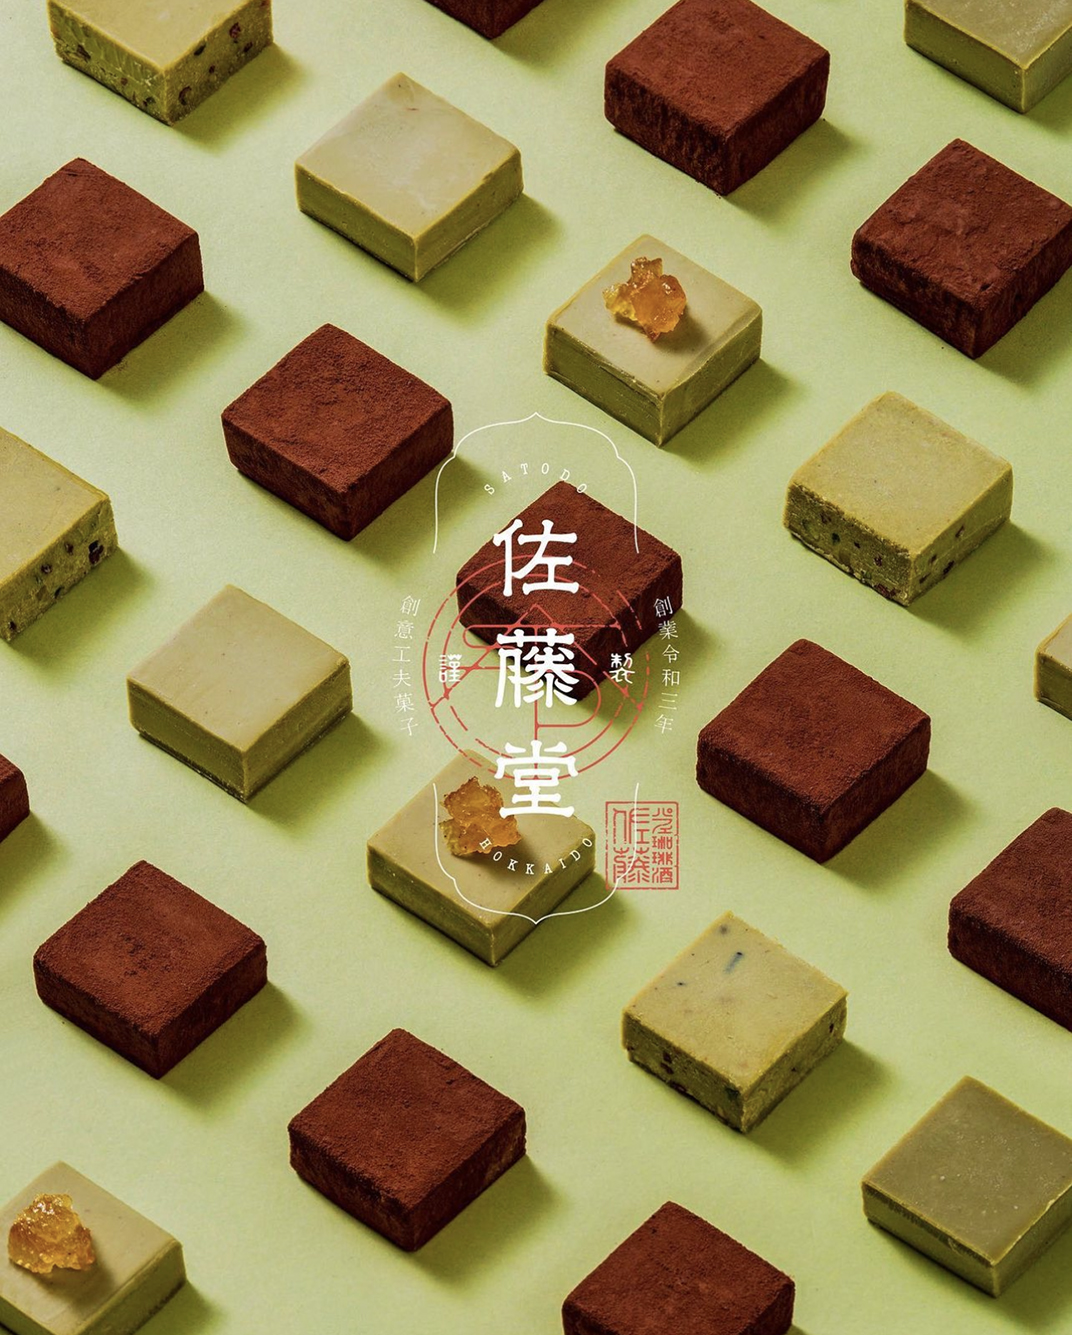 佐藤堂品牌形象设计 北京 上海 成都 武汉 杭州 广州 日本 木材 logo设计 vi设计 空间设计